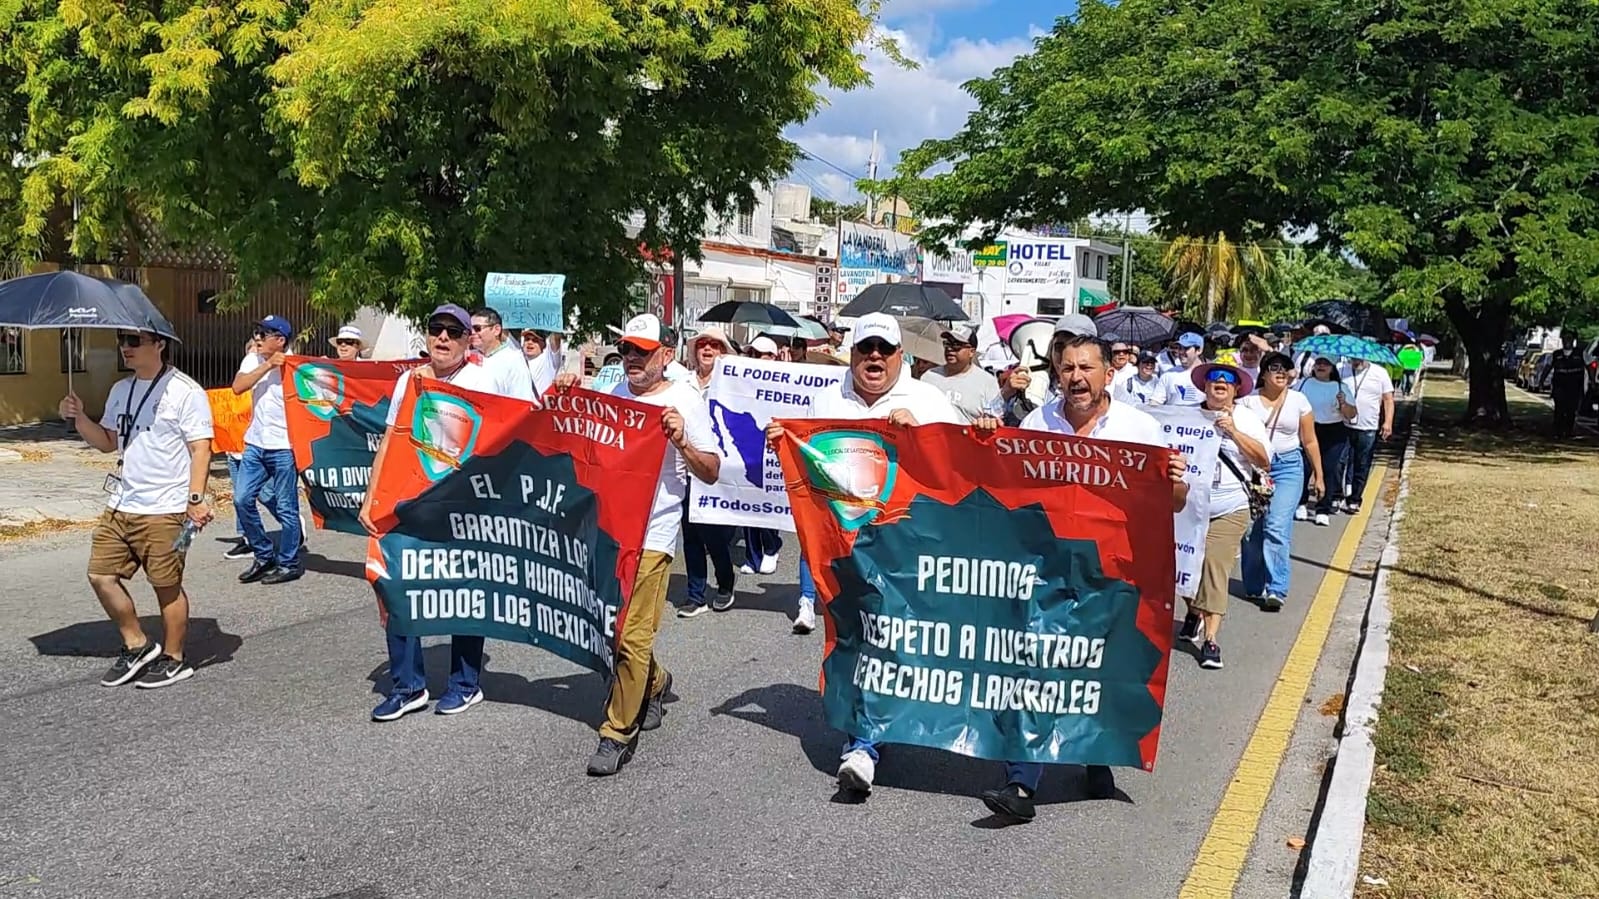 La protesta marca un llamado de atención por parte de los trabajadores del Poder Judicial de la Federación en defensa de sus derechos laborales 